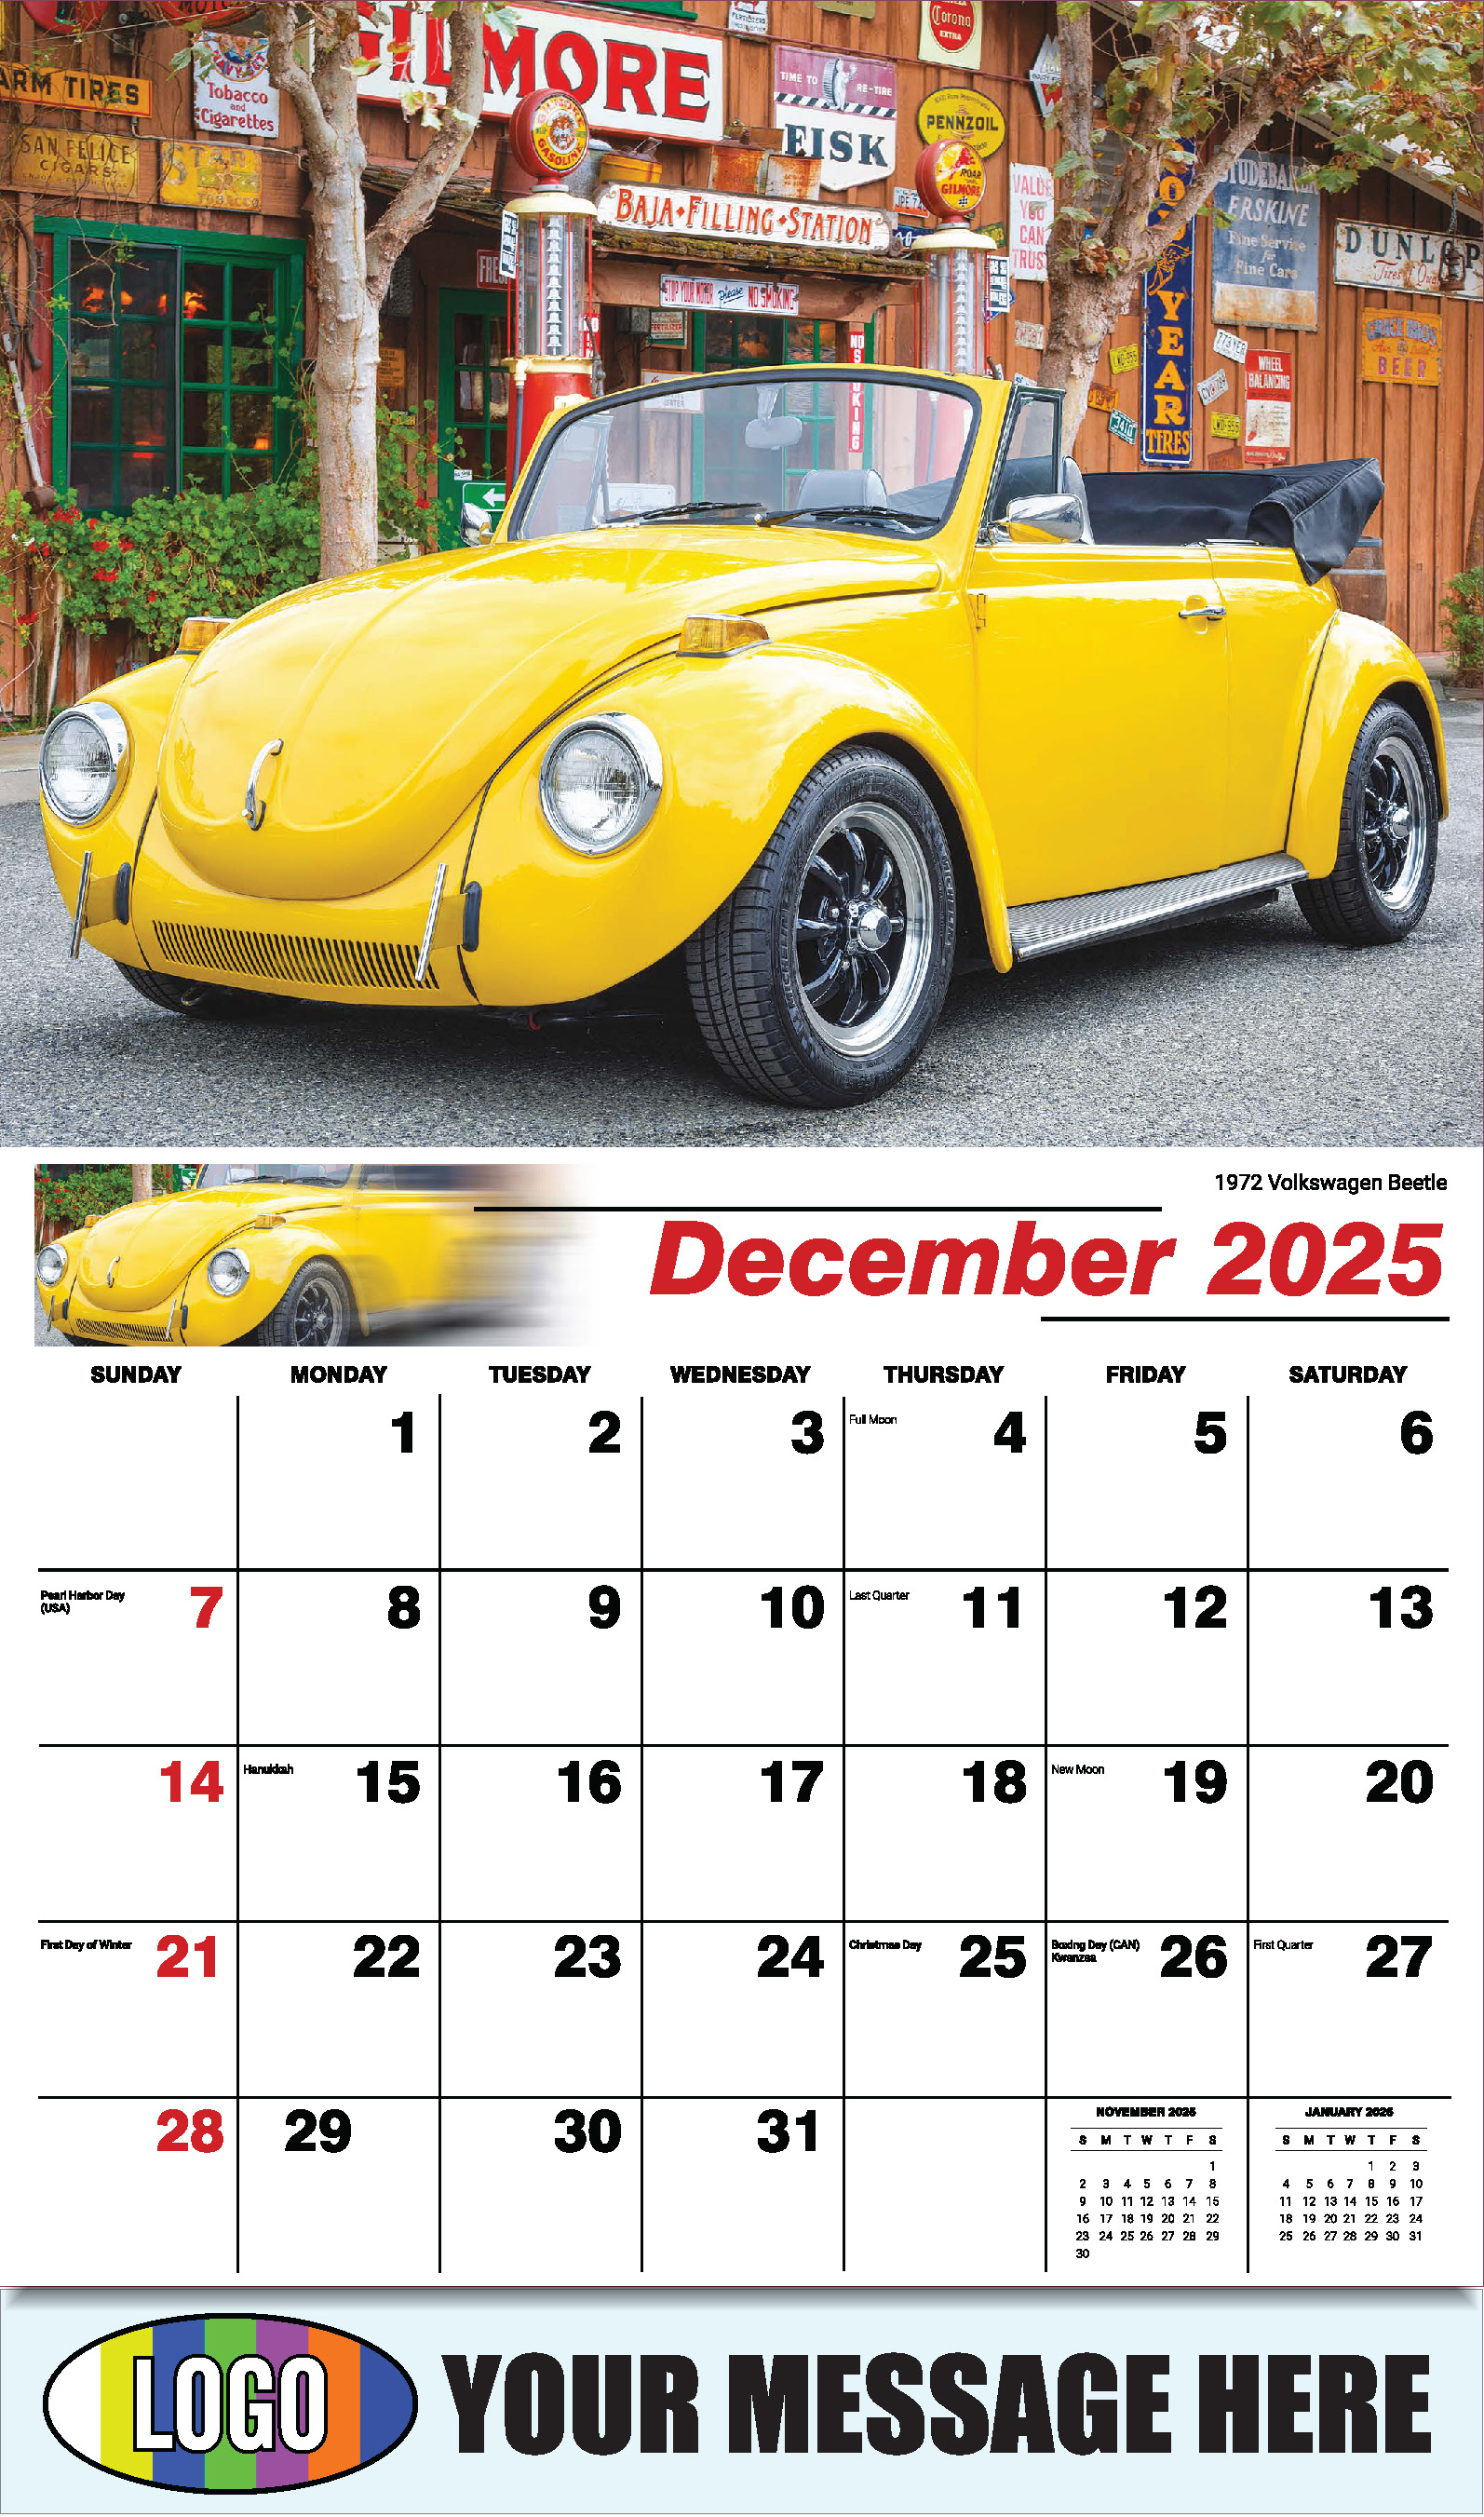 Classic Cars 2025 Automotive Business Promo Calendar - December